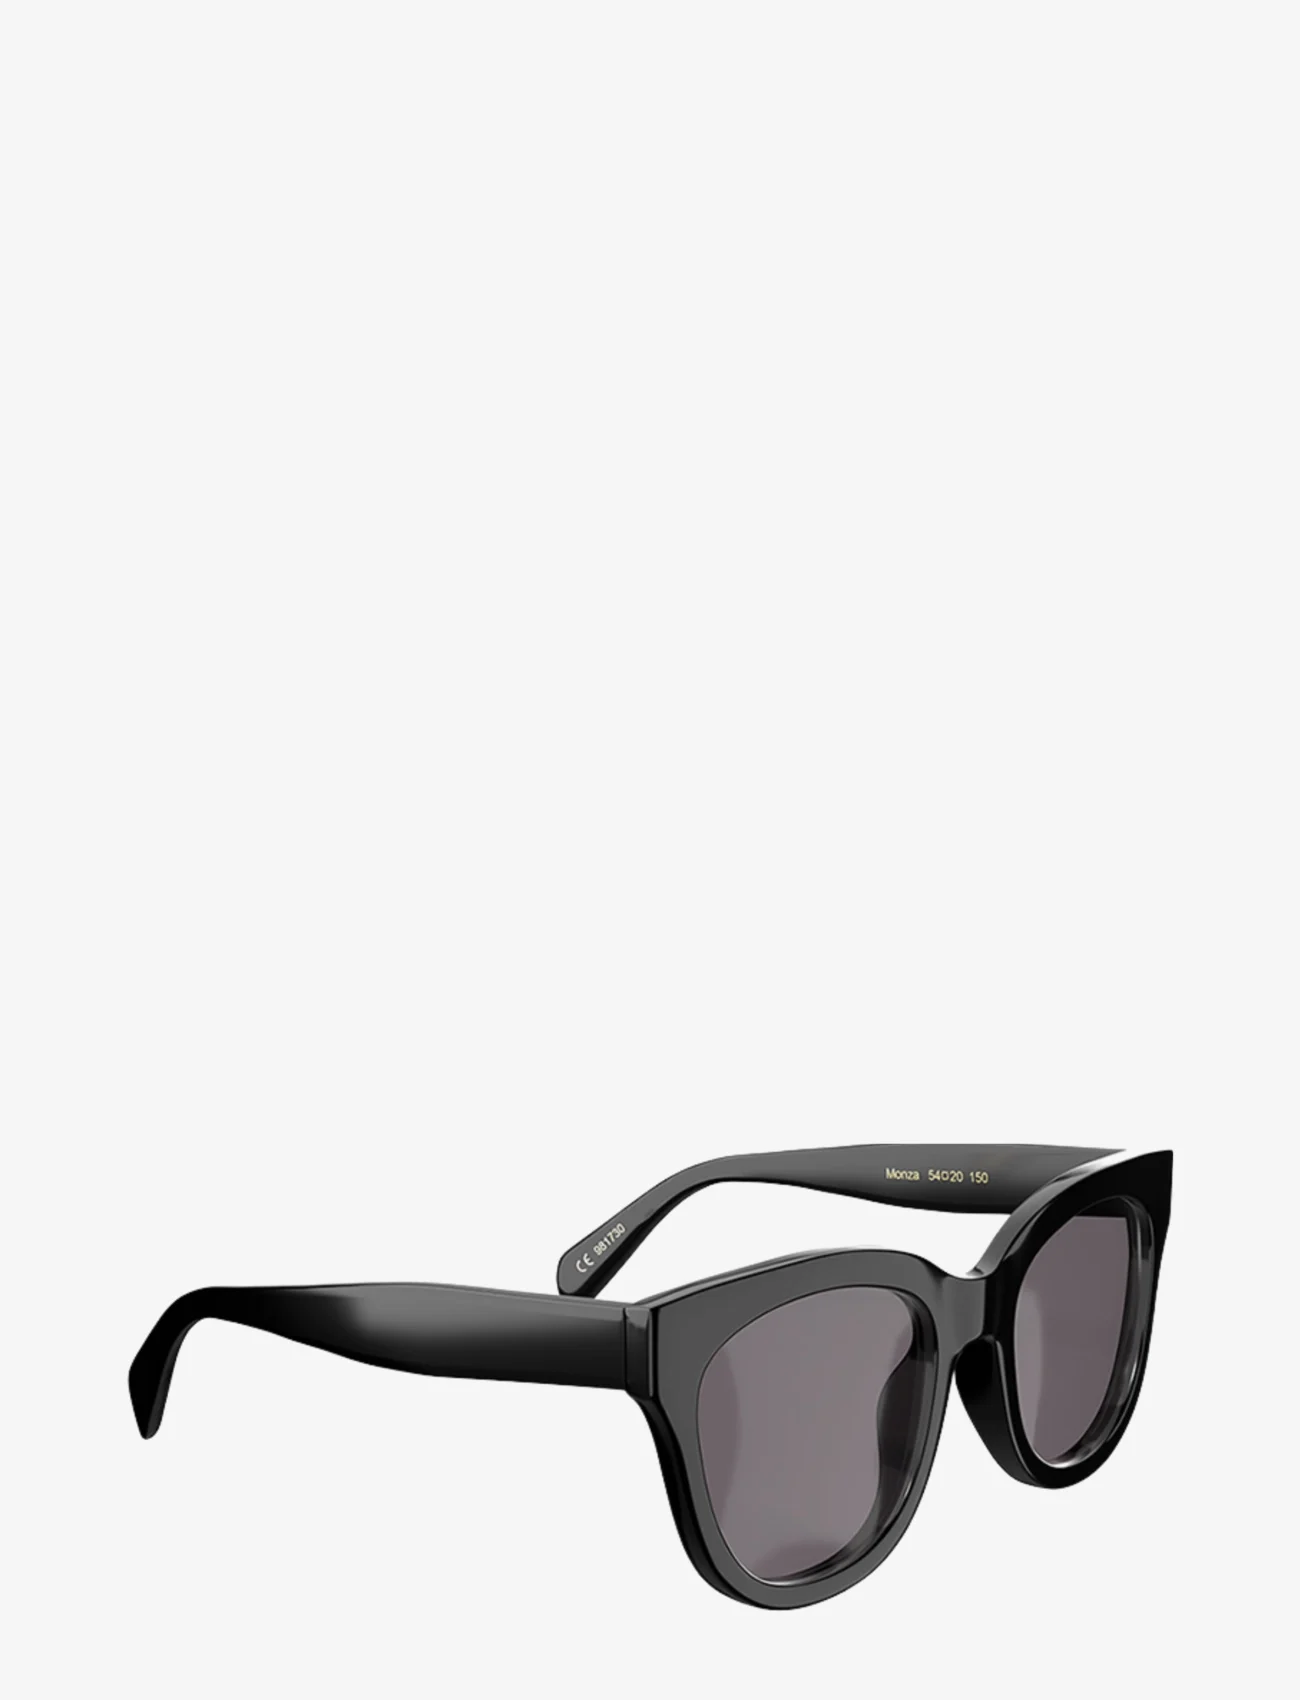 Corlin Eyewear - Monza - d-shaped - monza black black - 1